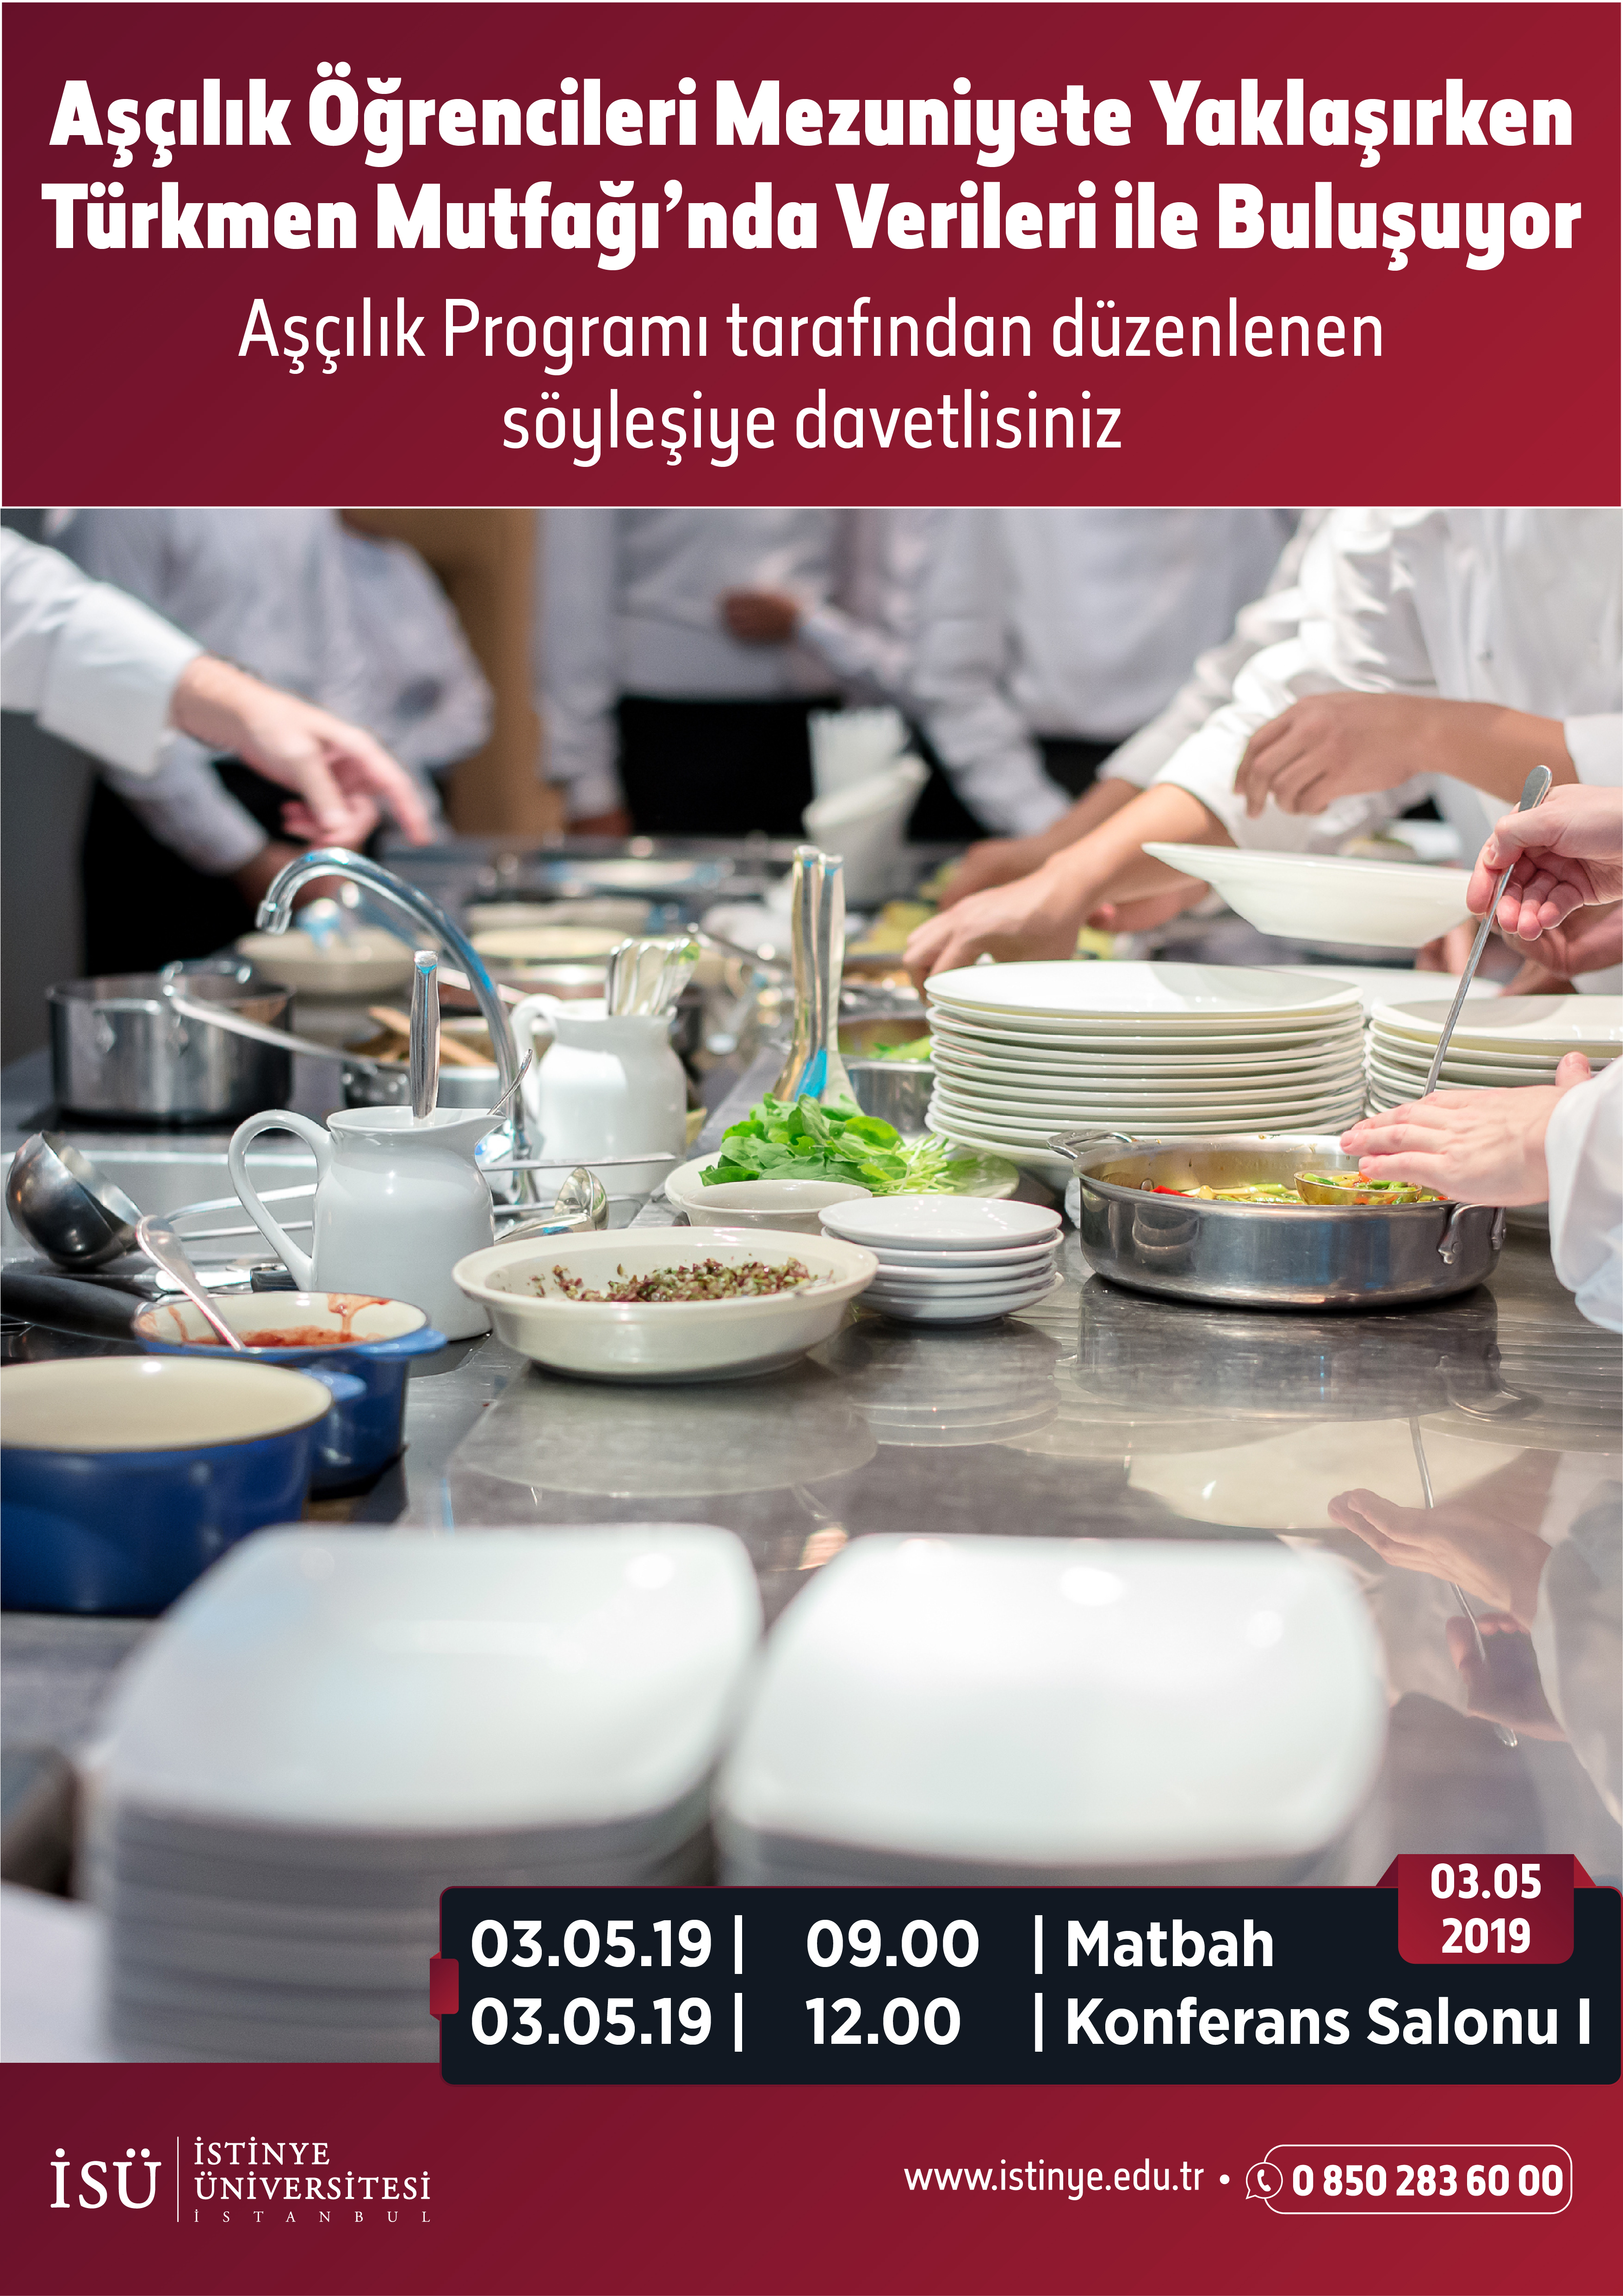 Aşçılık Öğrencileri Mezuniyete Yaklaşırken Türkmen Mutfağında Velileri ile Buluşuyor